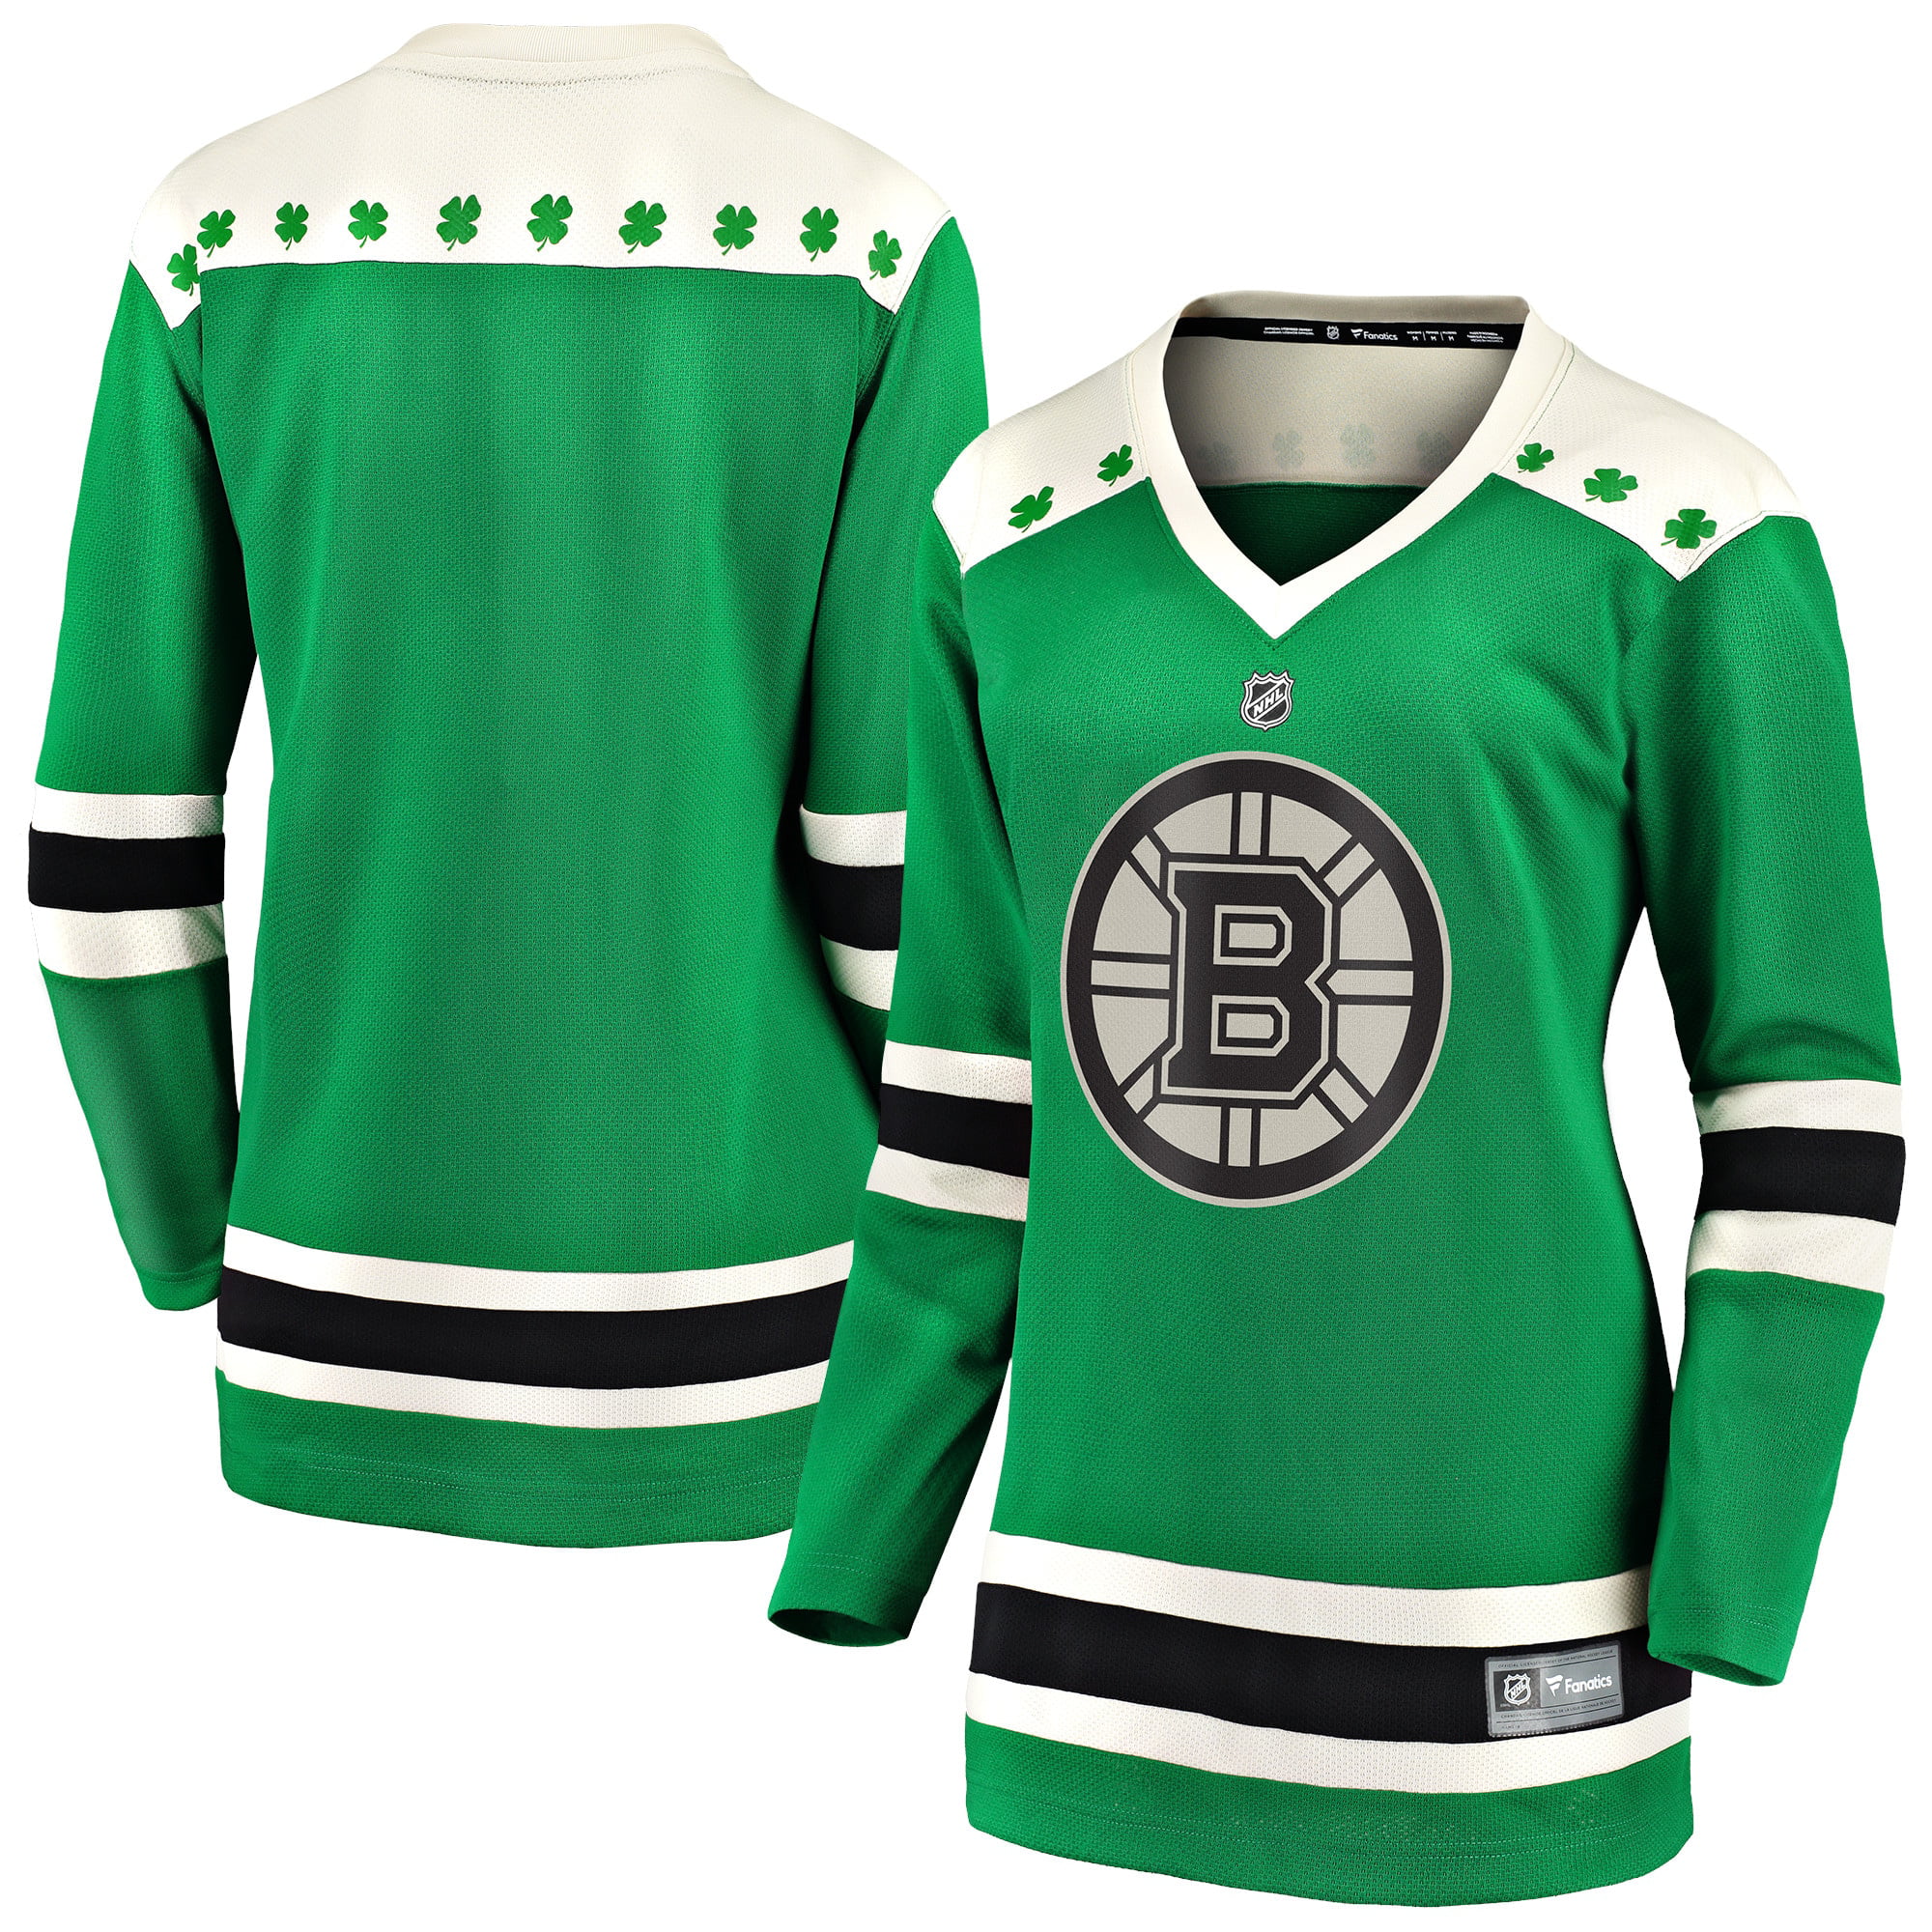 احذية نايك لكرة القدم Boston Bruins Fanatics Branded Women's 2021 St. Patrick's Day ... احذية نايك لكرة القدم